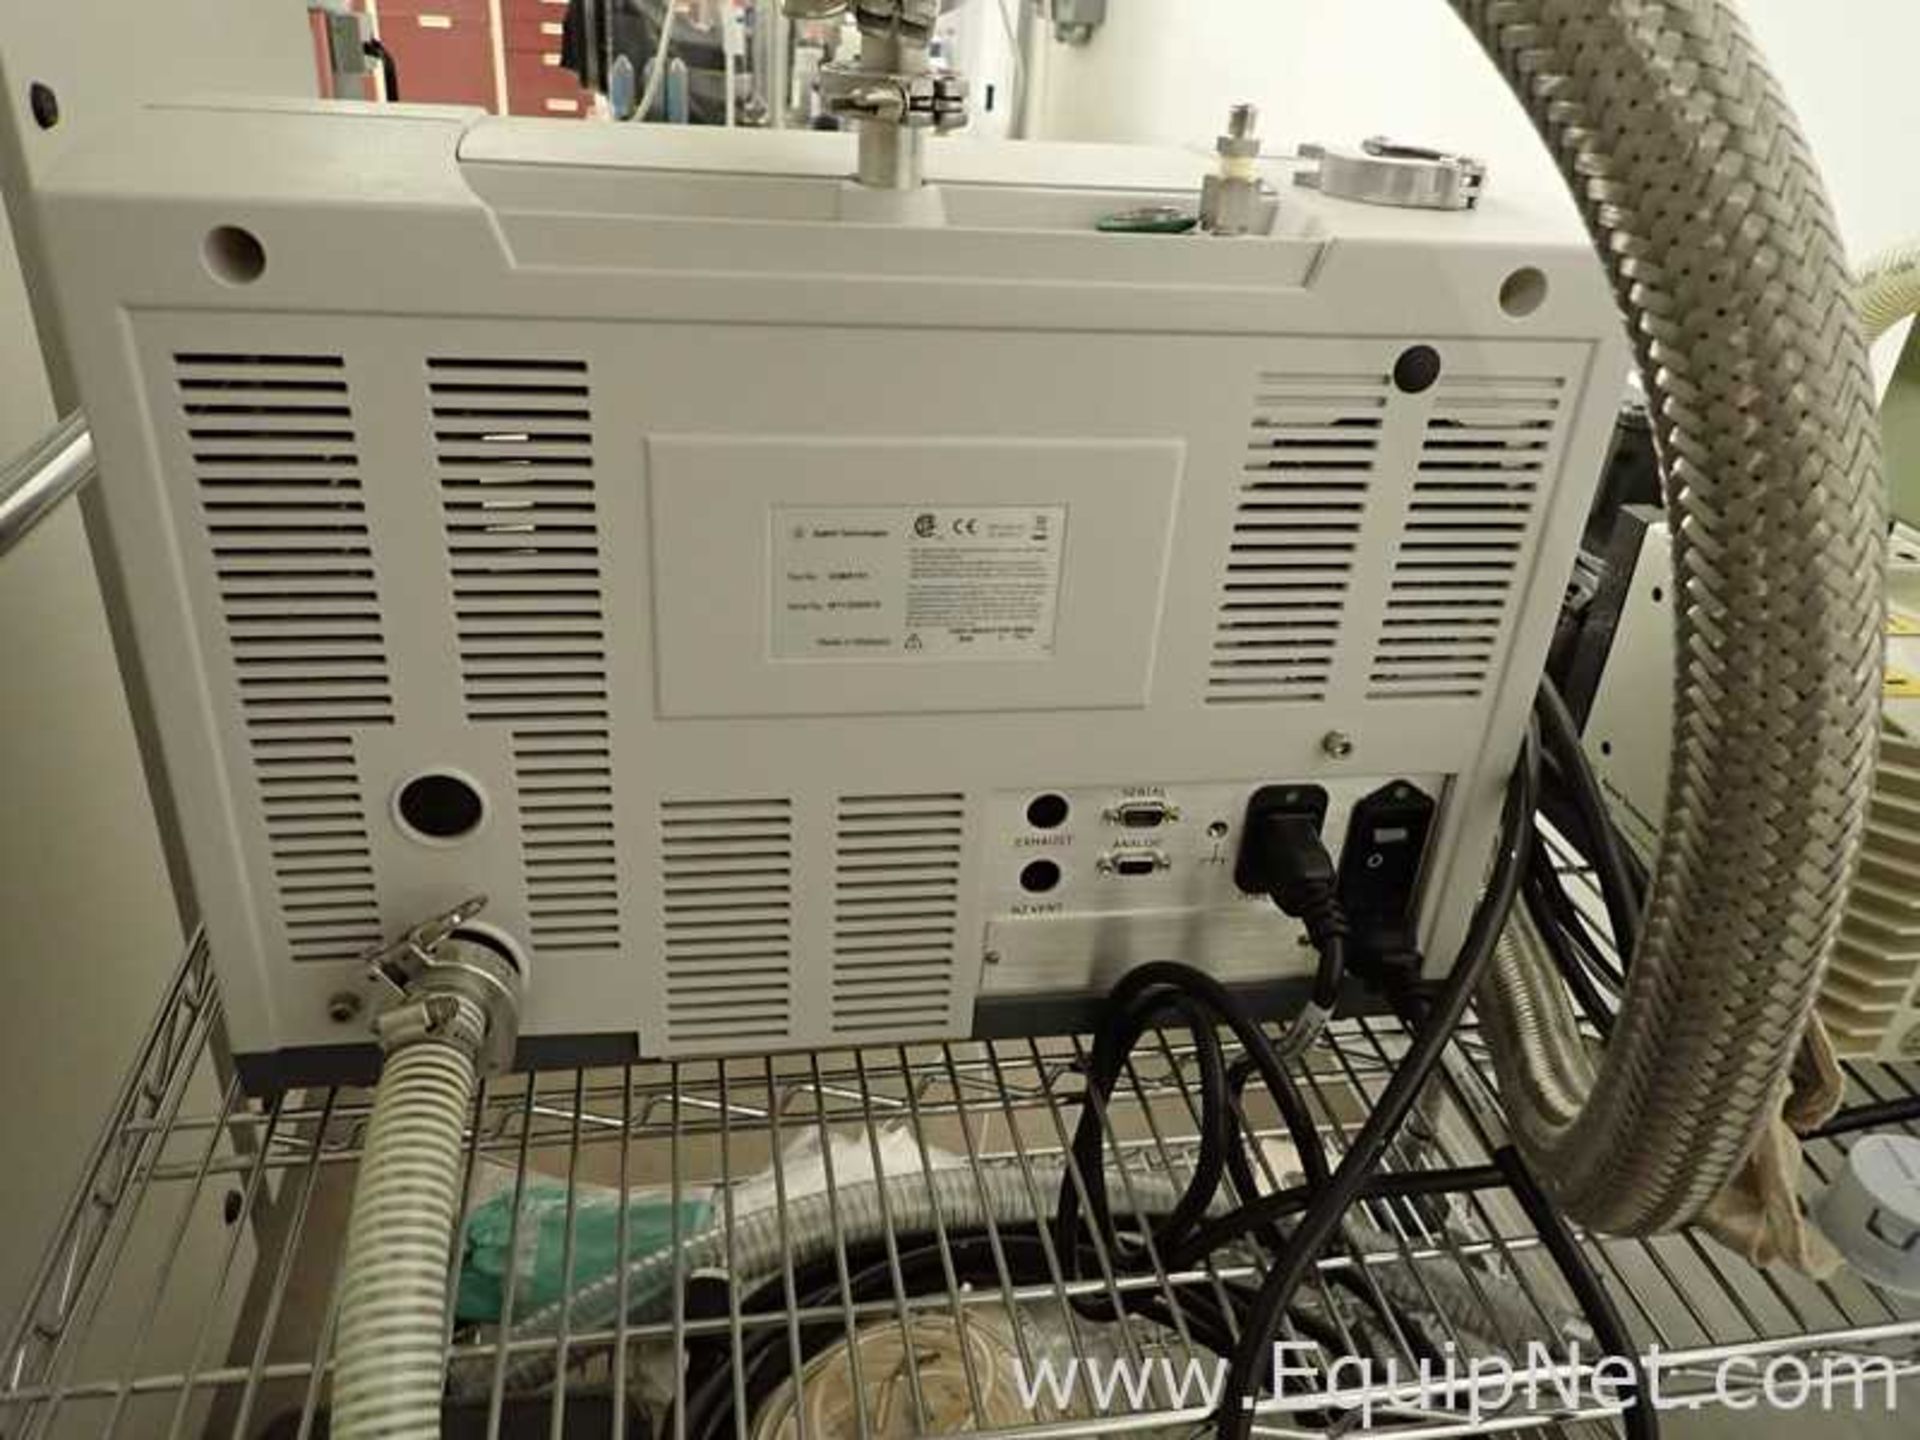 Agilent VSBR151 Leak Detector with DS 302 Vacuum Pump - Image 6 of 8